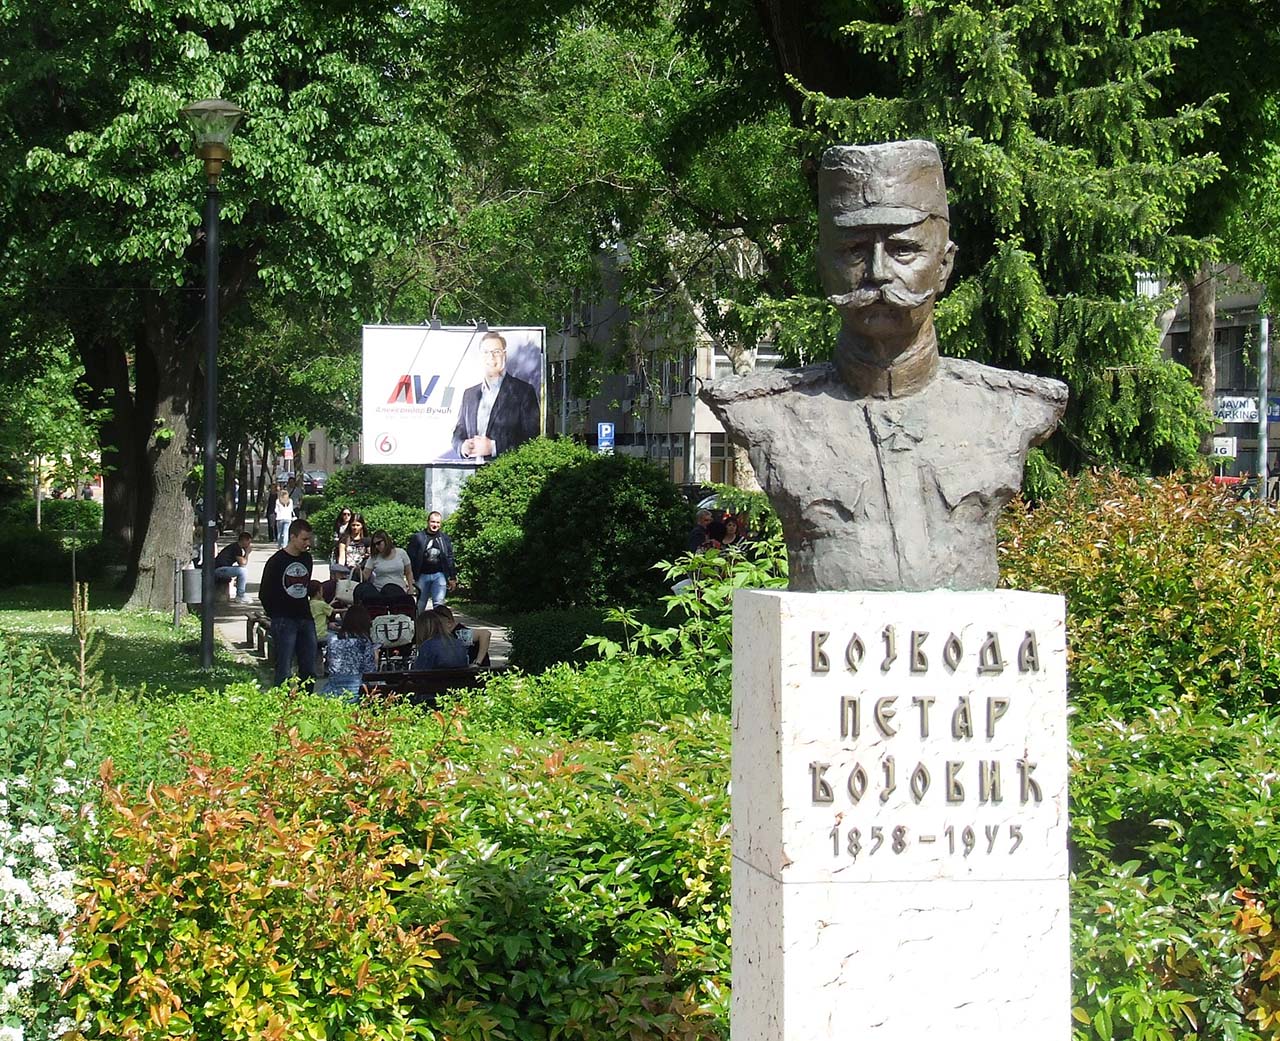 Spomenik vojvodi Petru Bojoviću